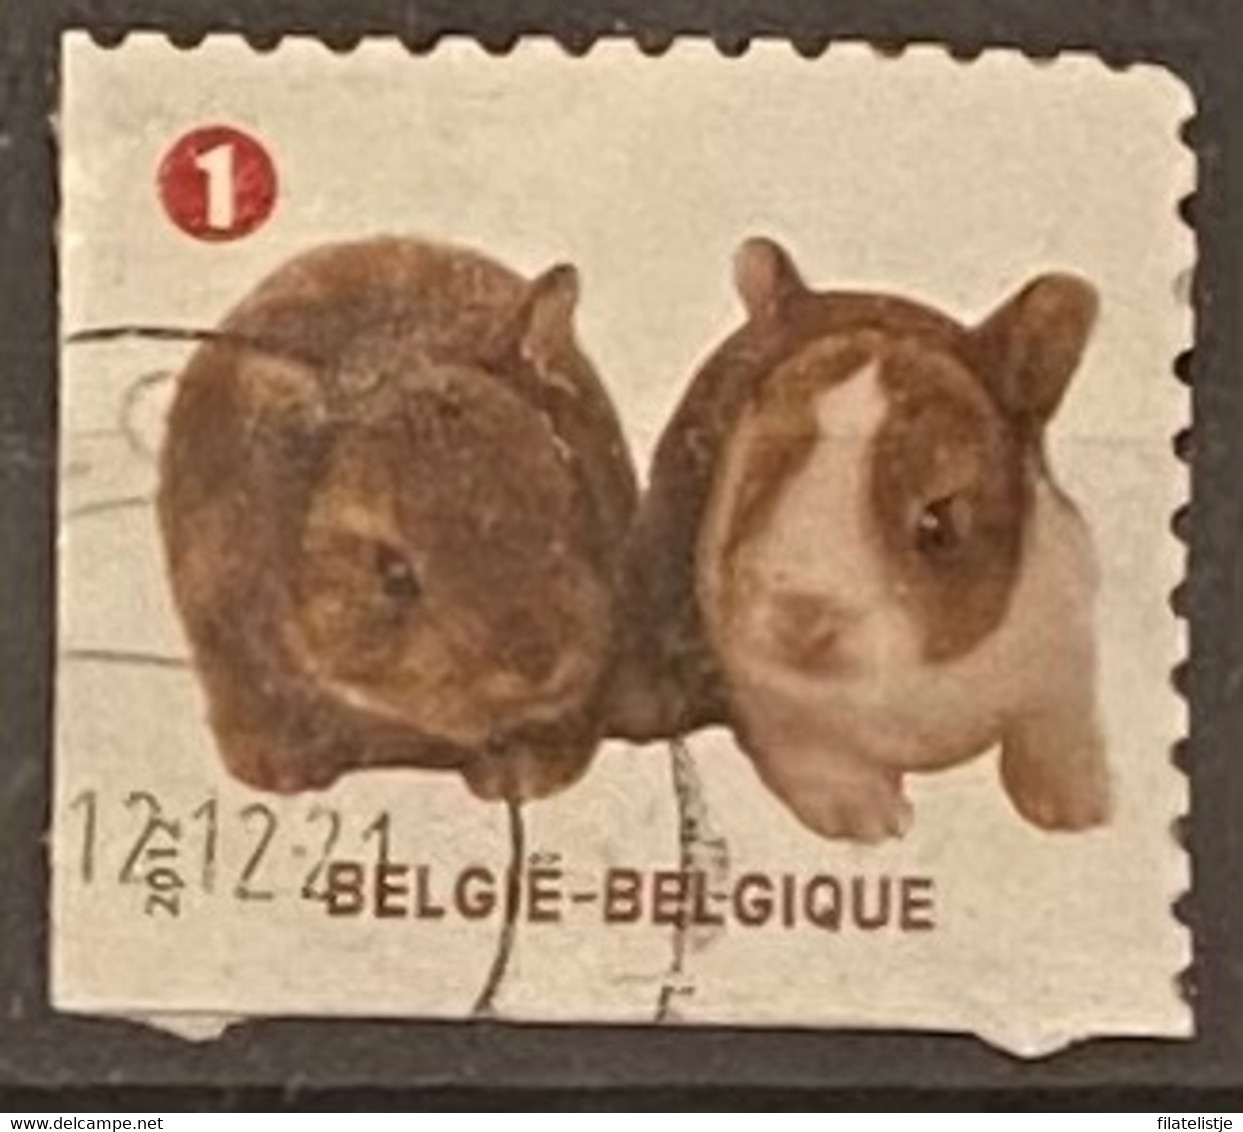 België Zegelnrs 4238 - Oblitérés